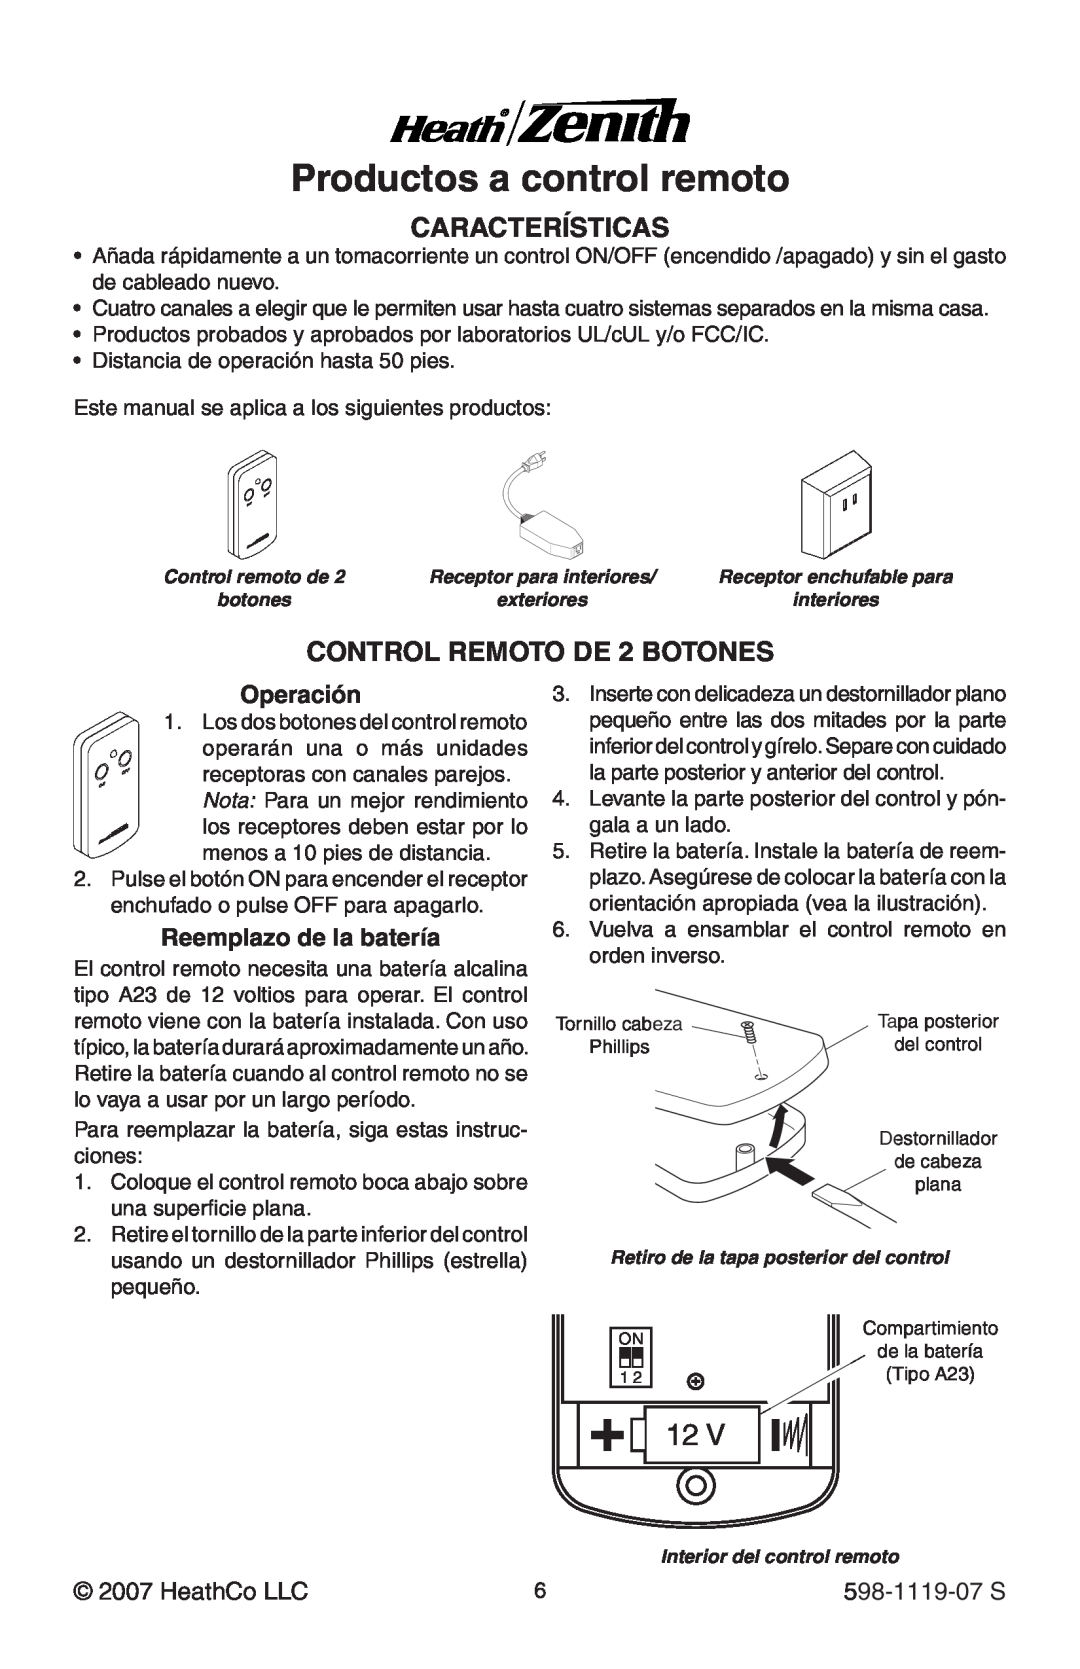 Heath Zenith manual Productos a control remoto, Operación, Reemplazo de la batería, HeathCo LLC, 598-1119-07 S 